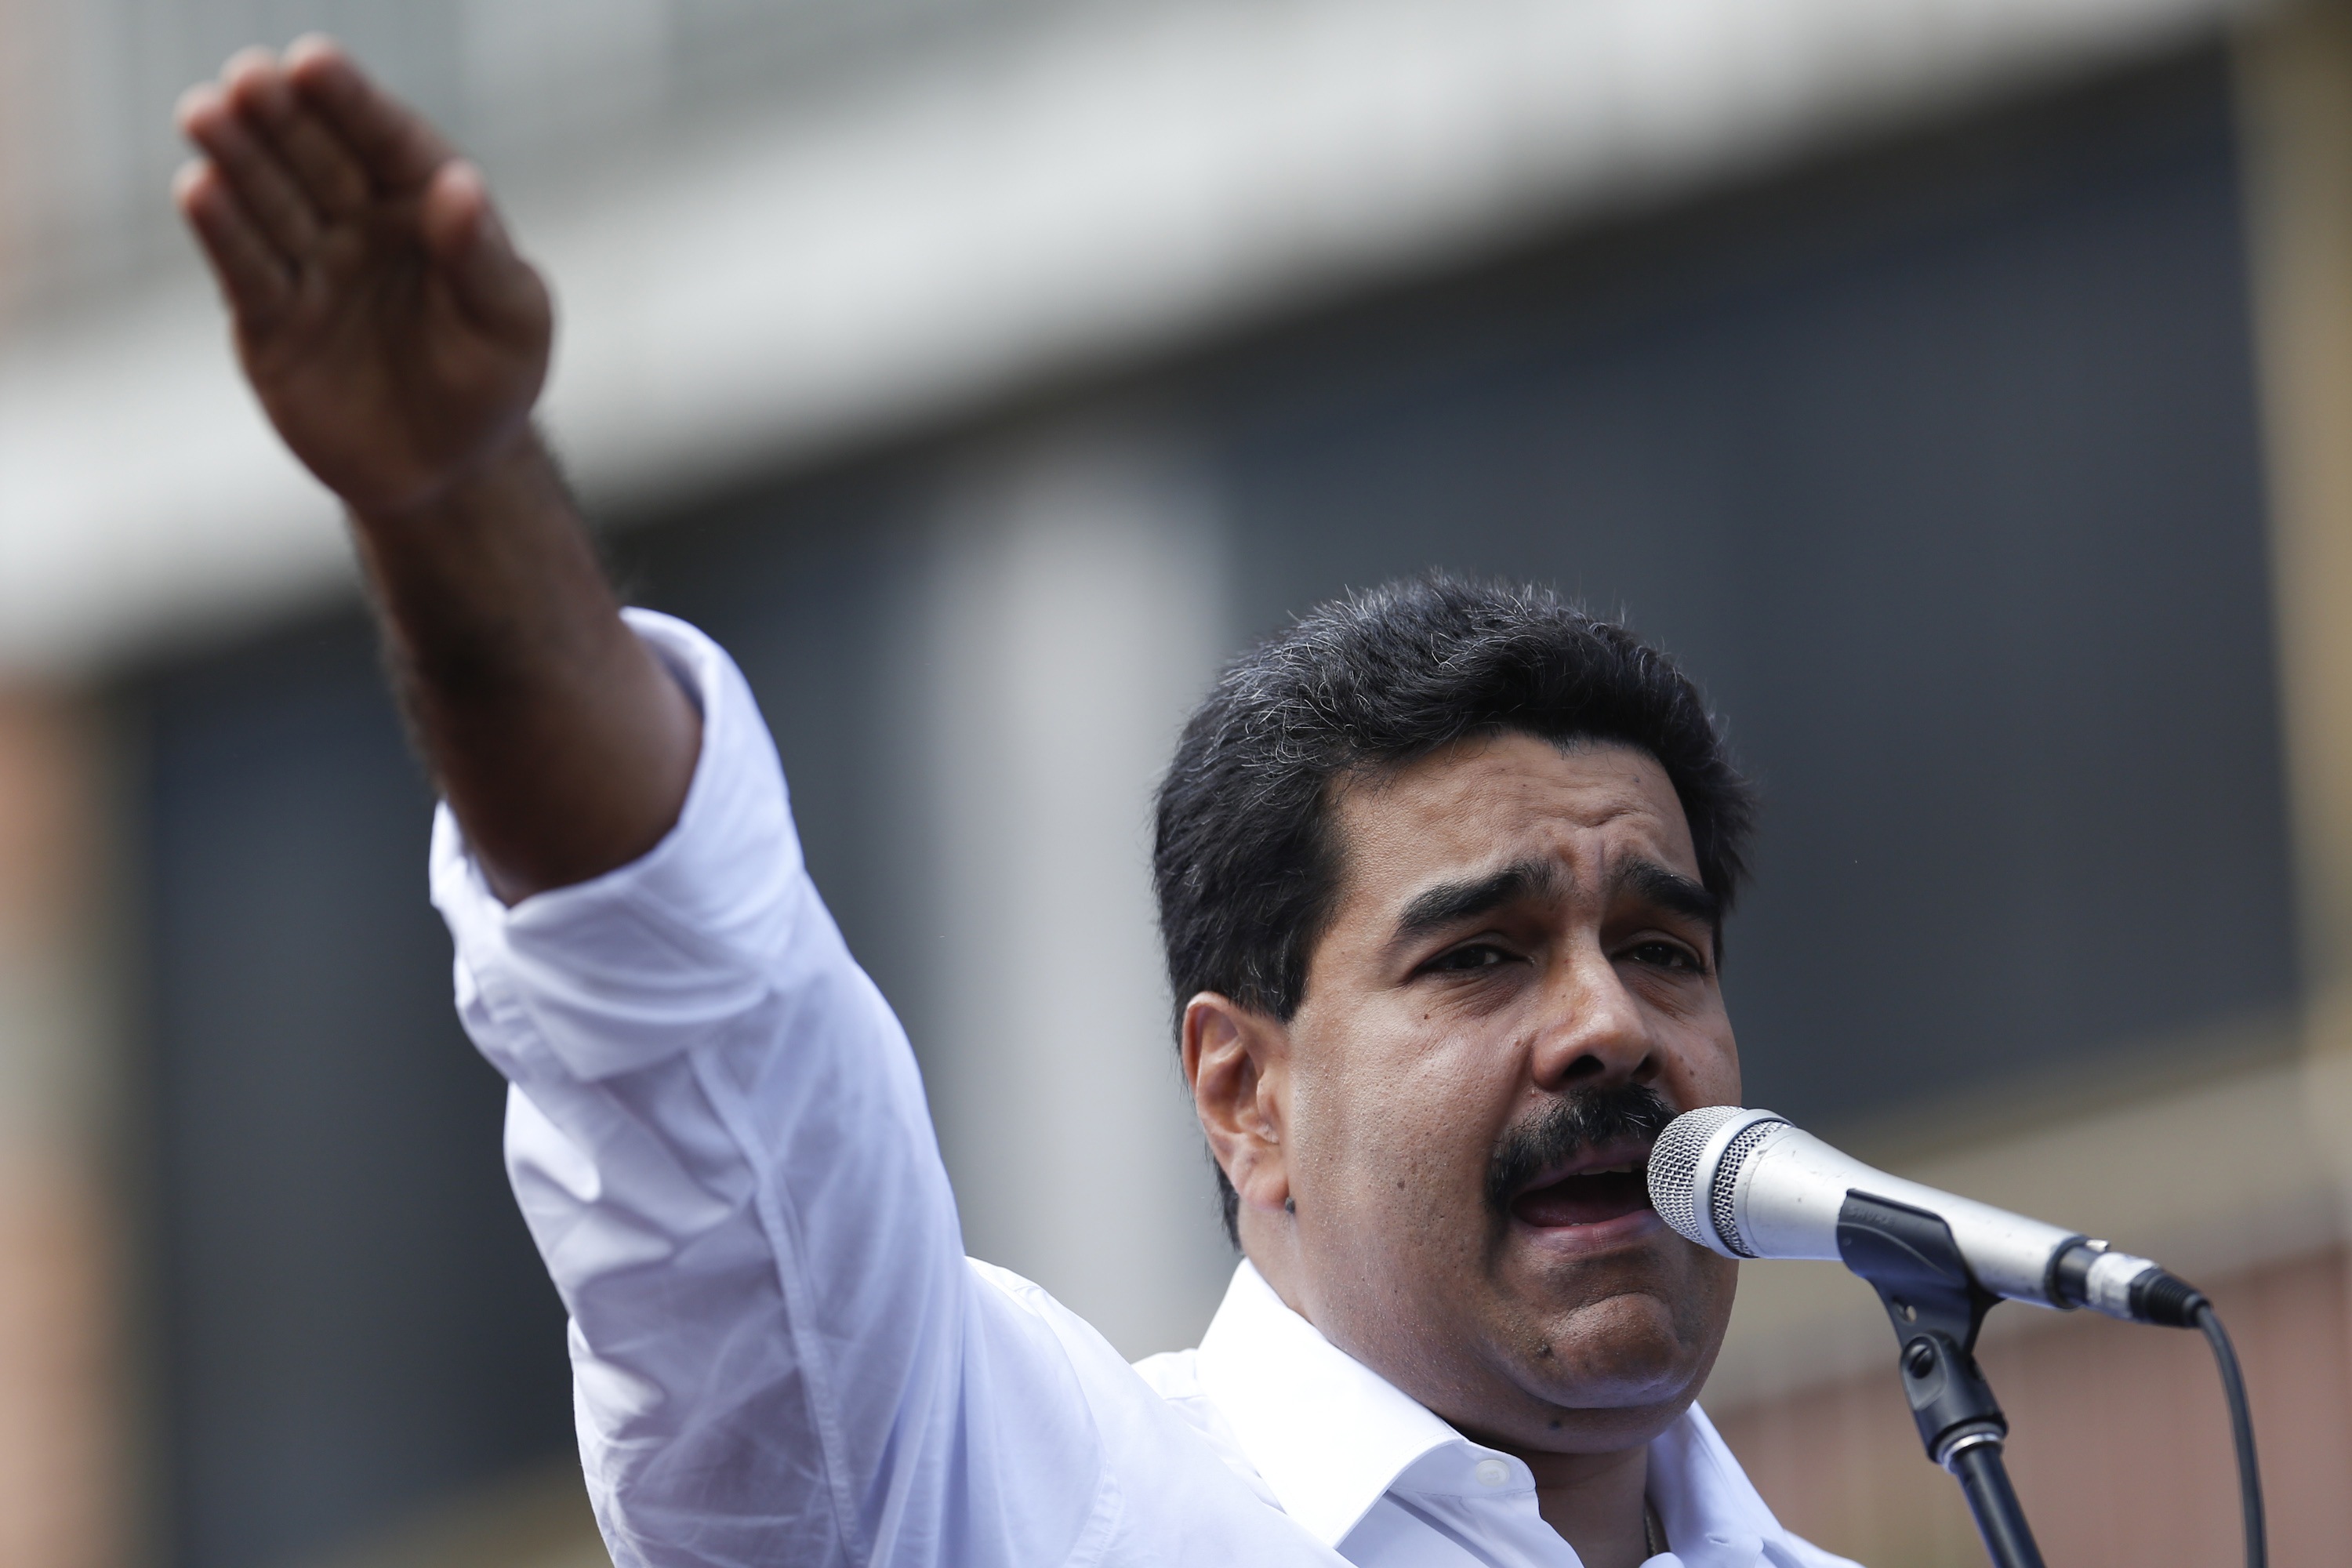 La pose más espeluznante de Nicolás Maduro (FOTO)